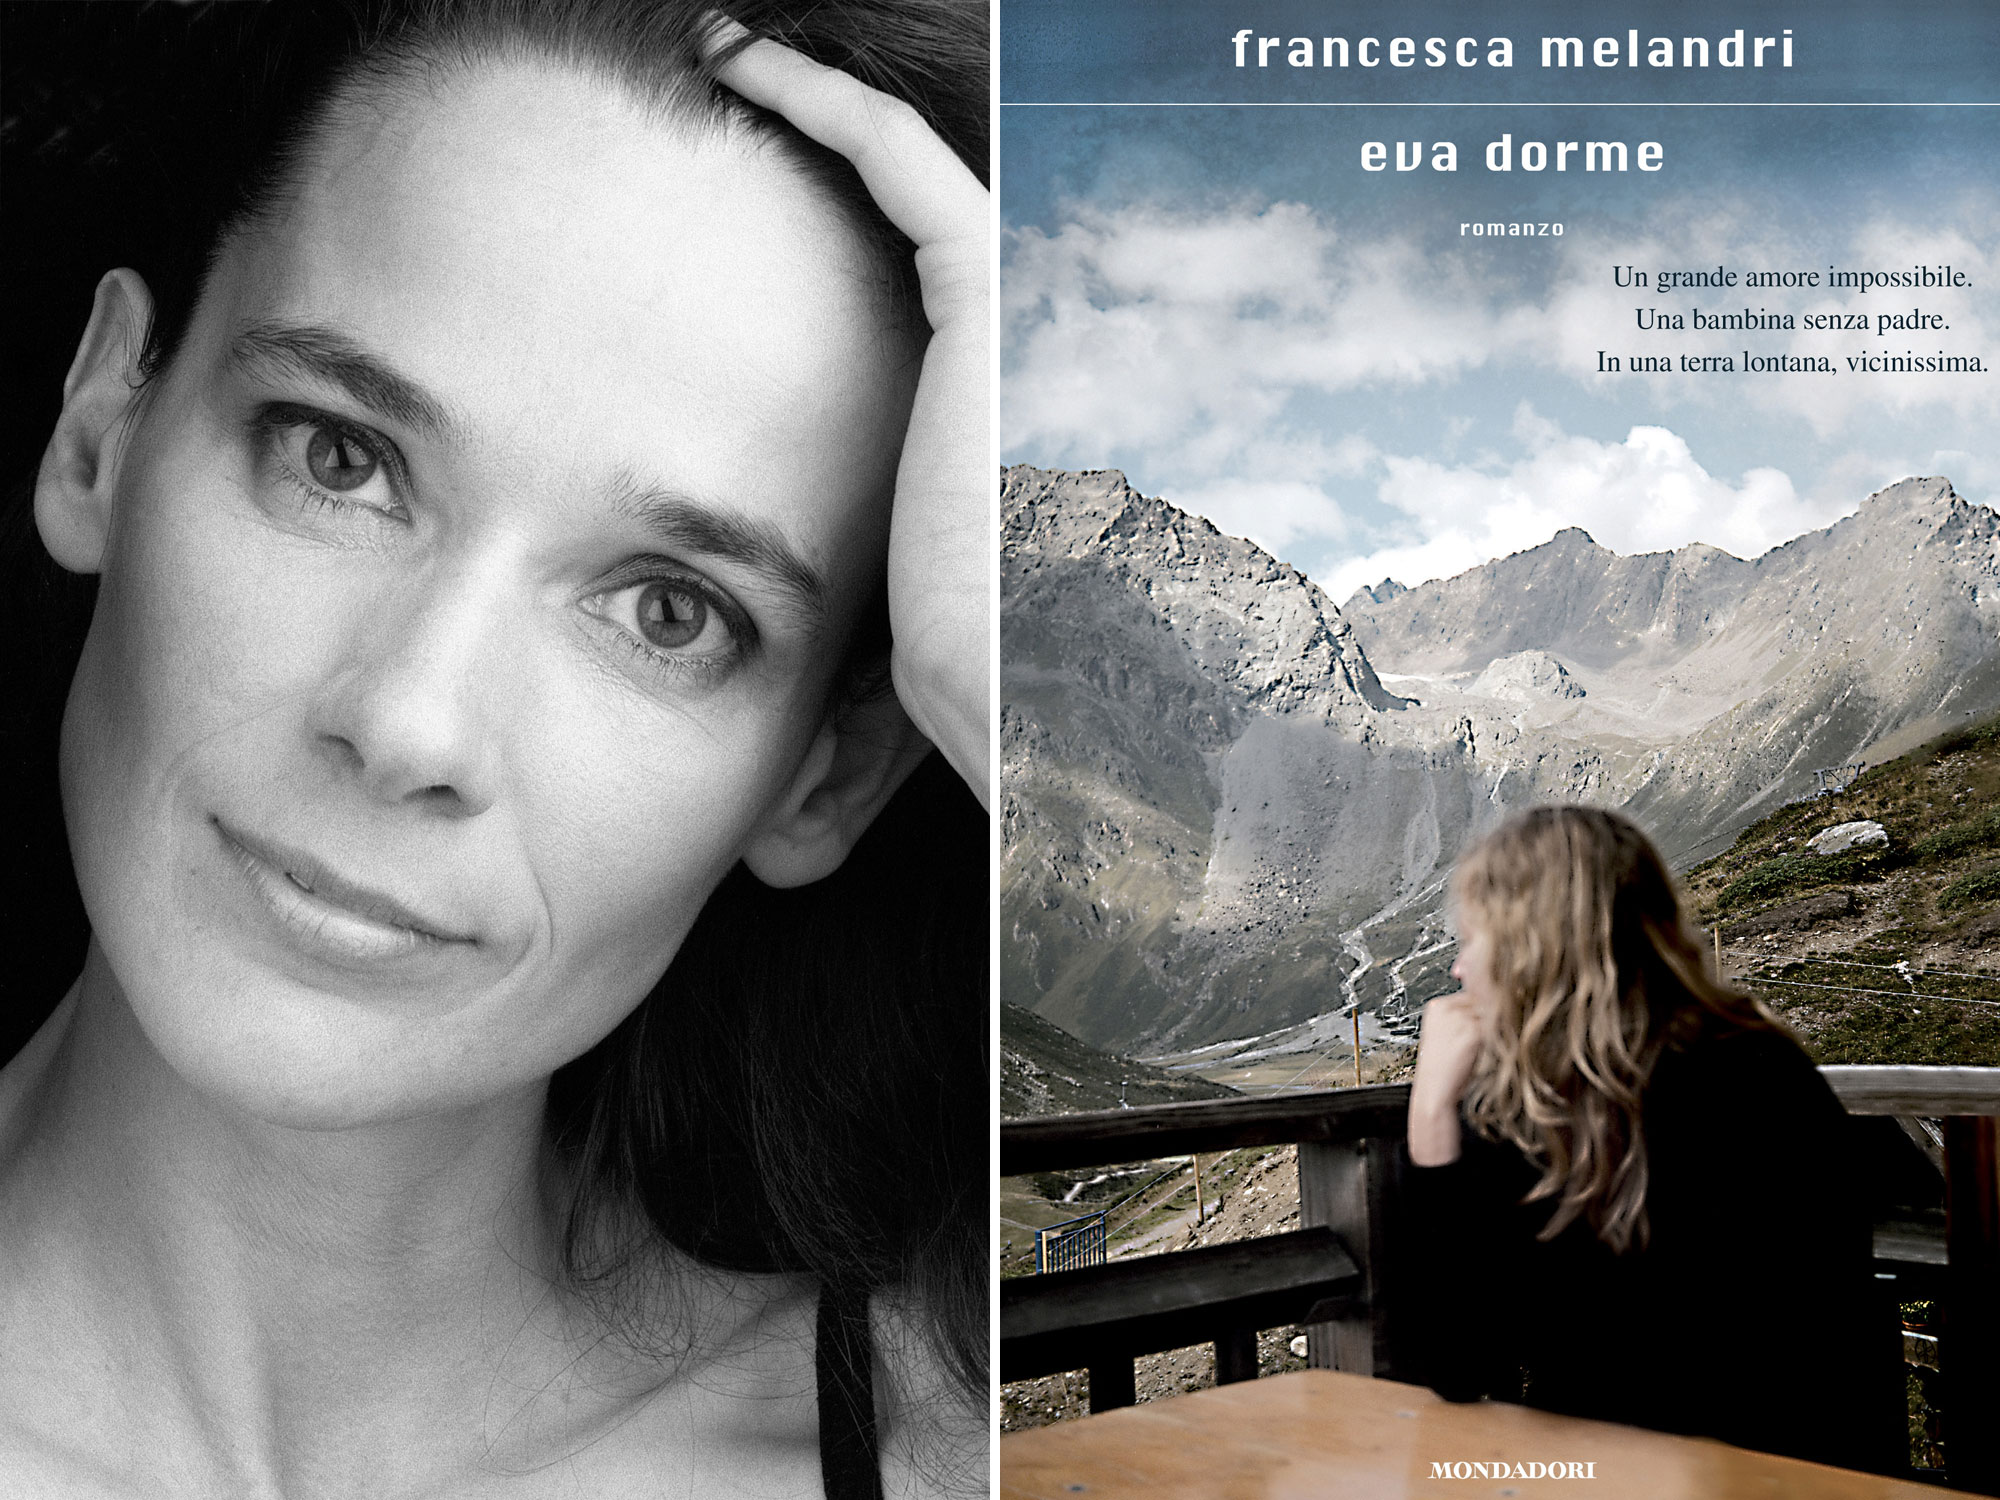 Francesca Melandris Roman "Eva dorme" (2011) beschäftigt sich u.a. mit der Option aus italienischer Sicht.